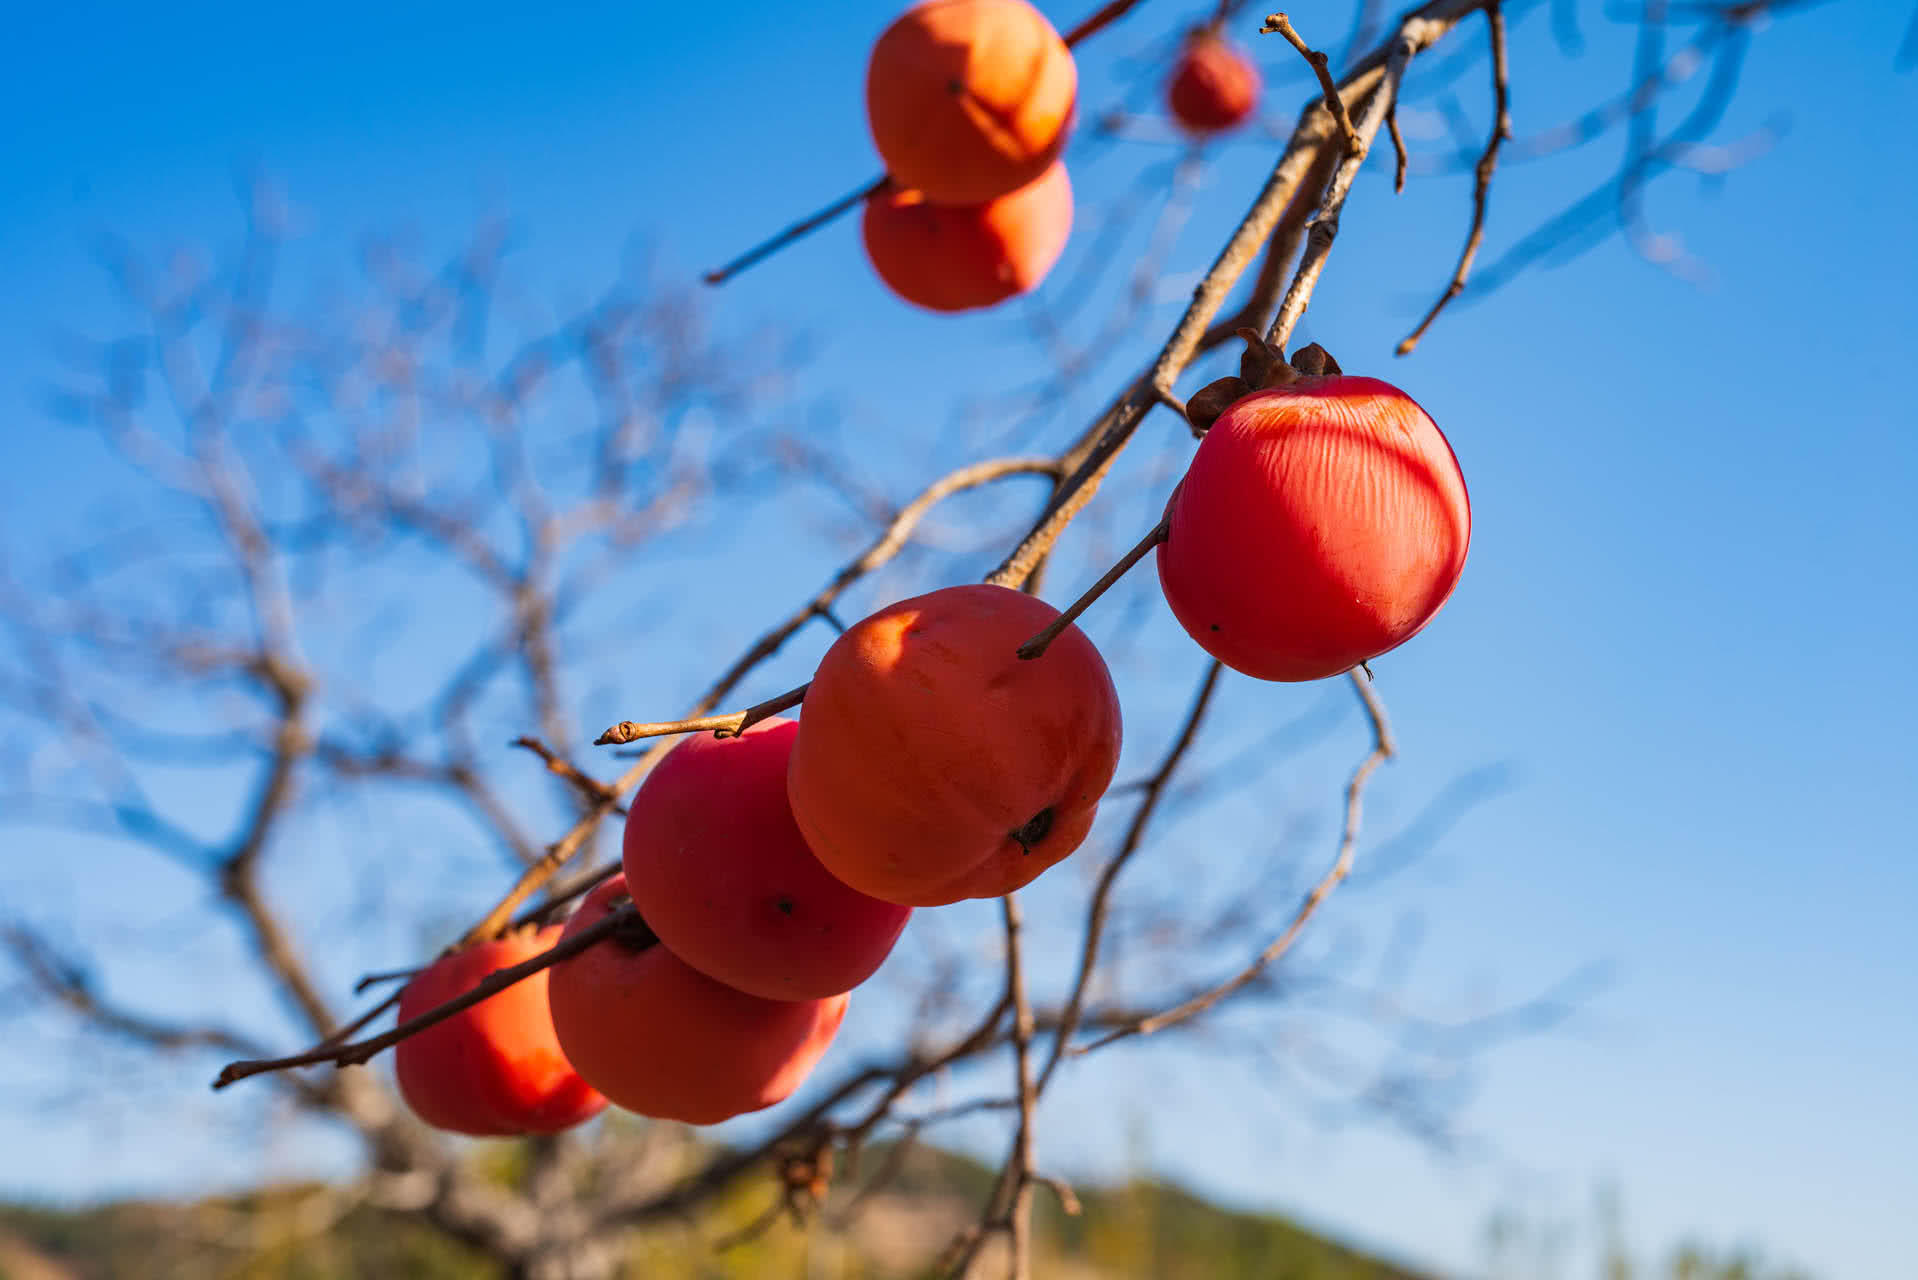 秋天是柿子成熟的季节,很多摄影爱好者都喜欢拍拍柿子